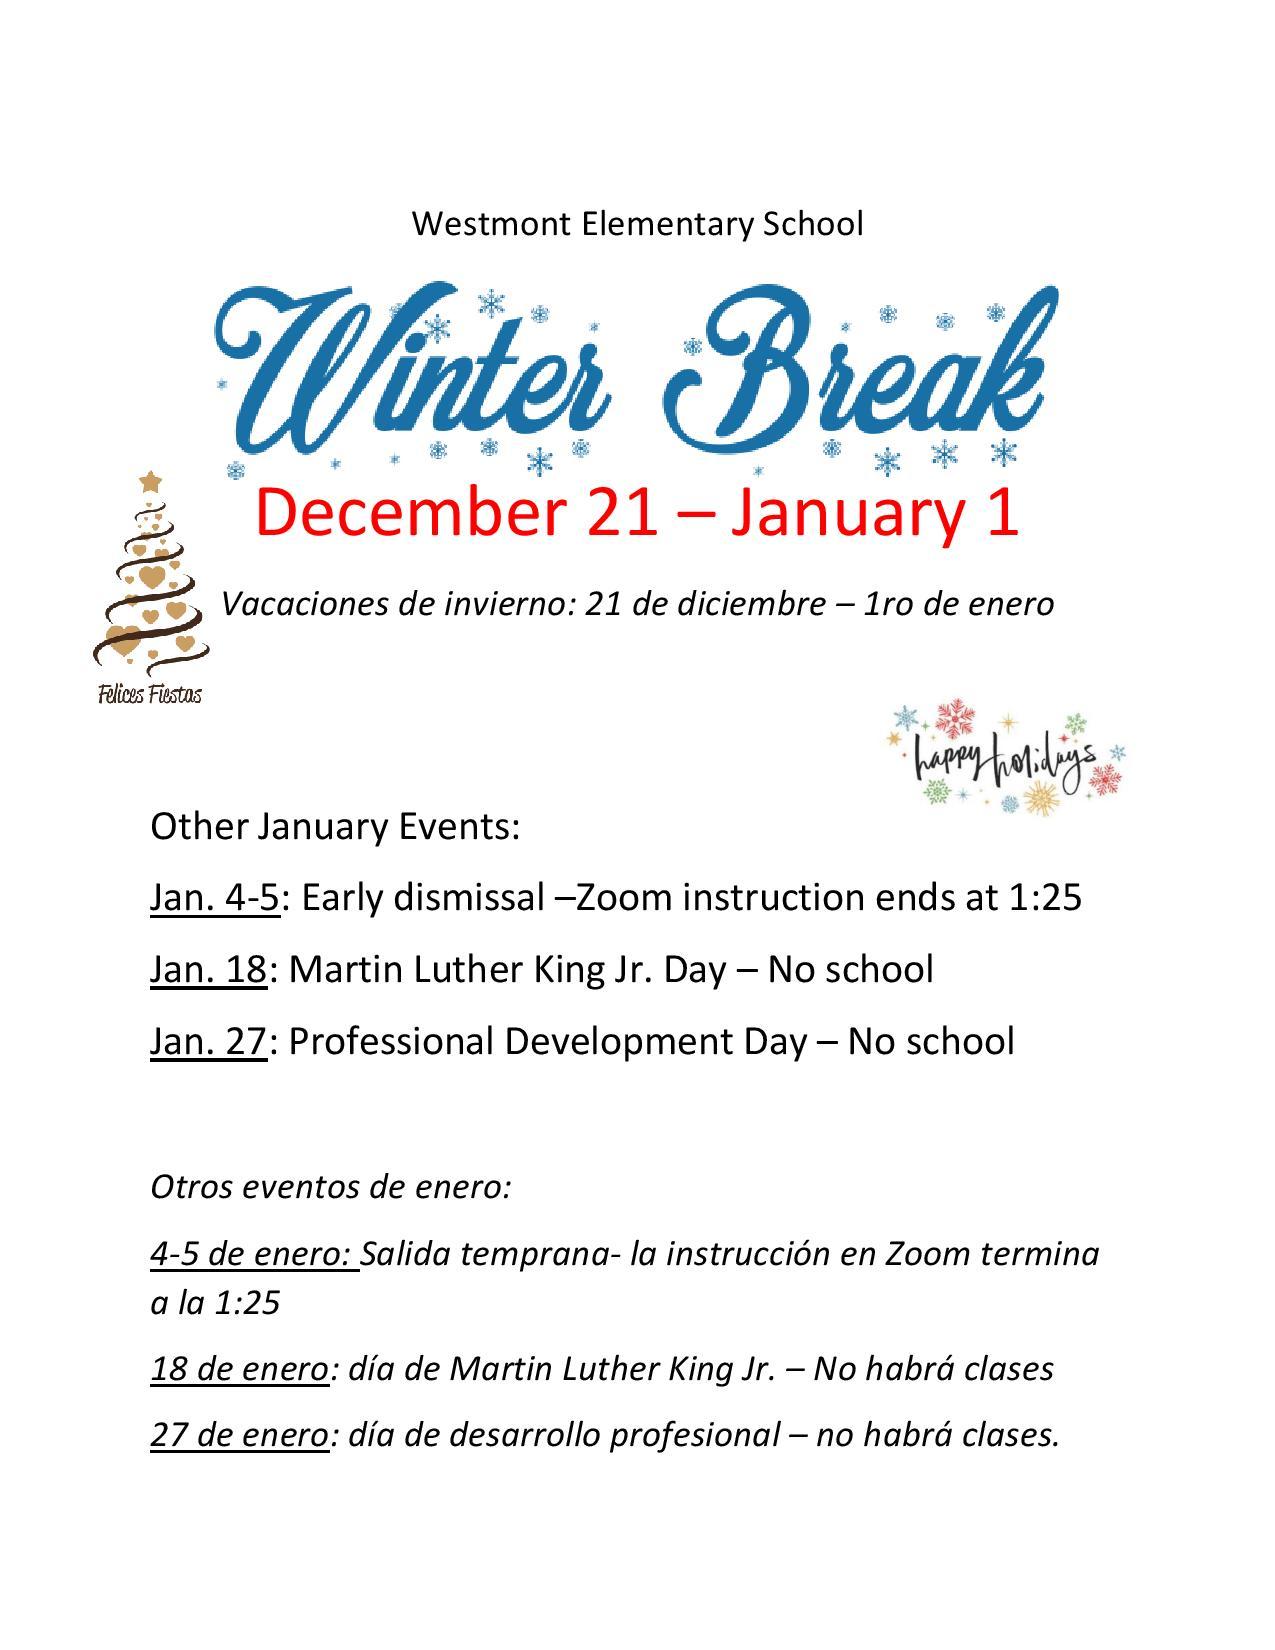 Winter Break Flyer